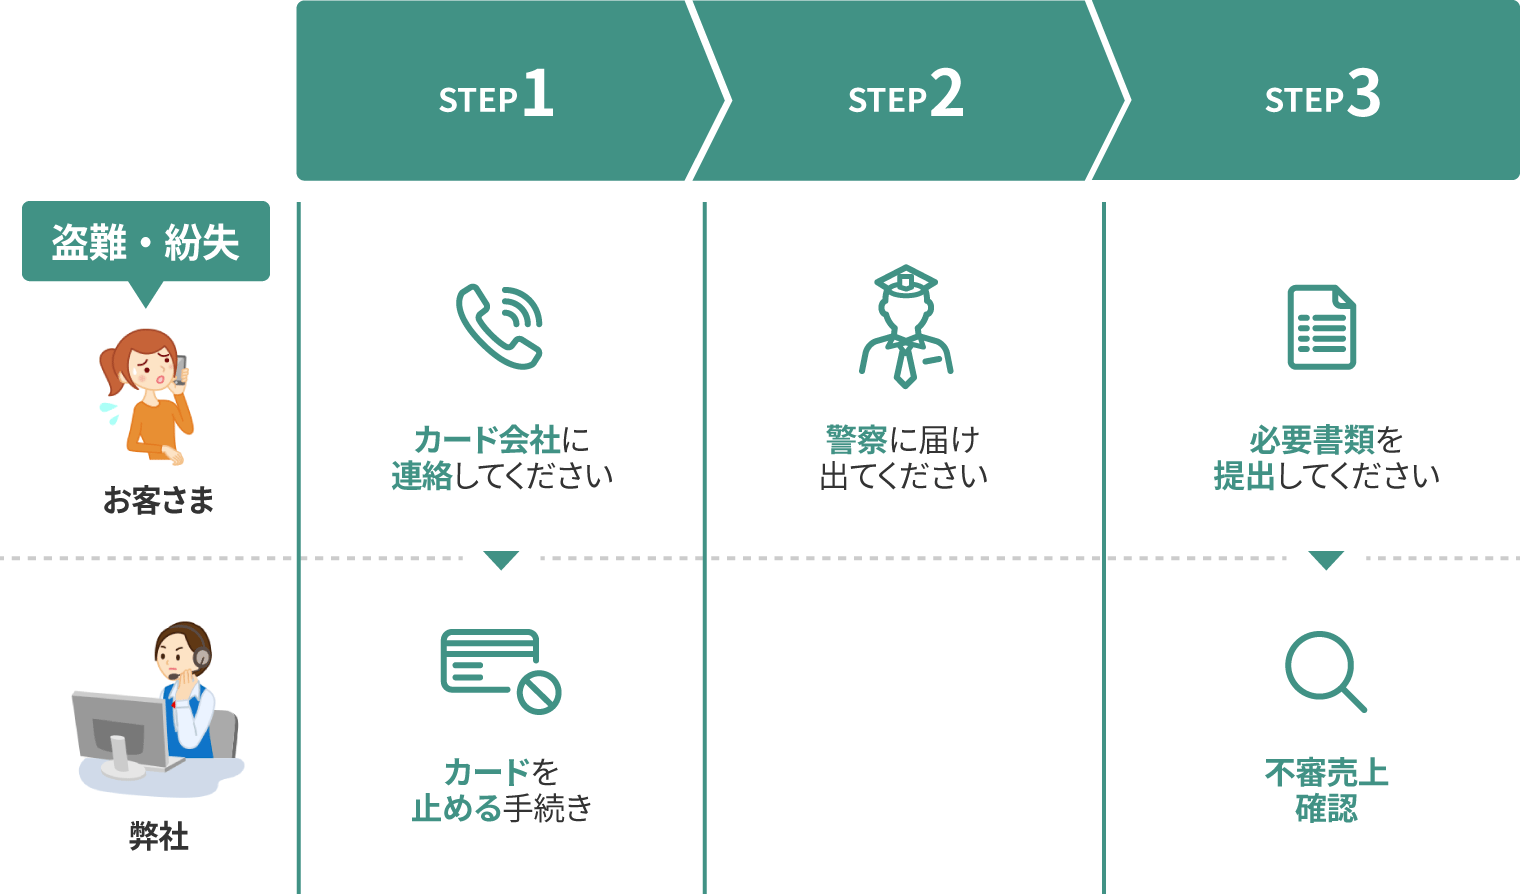 三井住友カードはコンビニでポイント5倍の最強クレカ Vpassアプリで管理も簡単